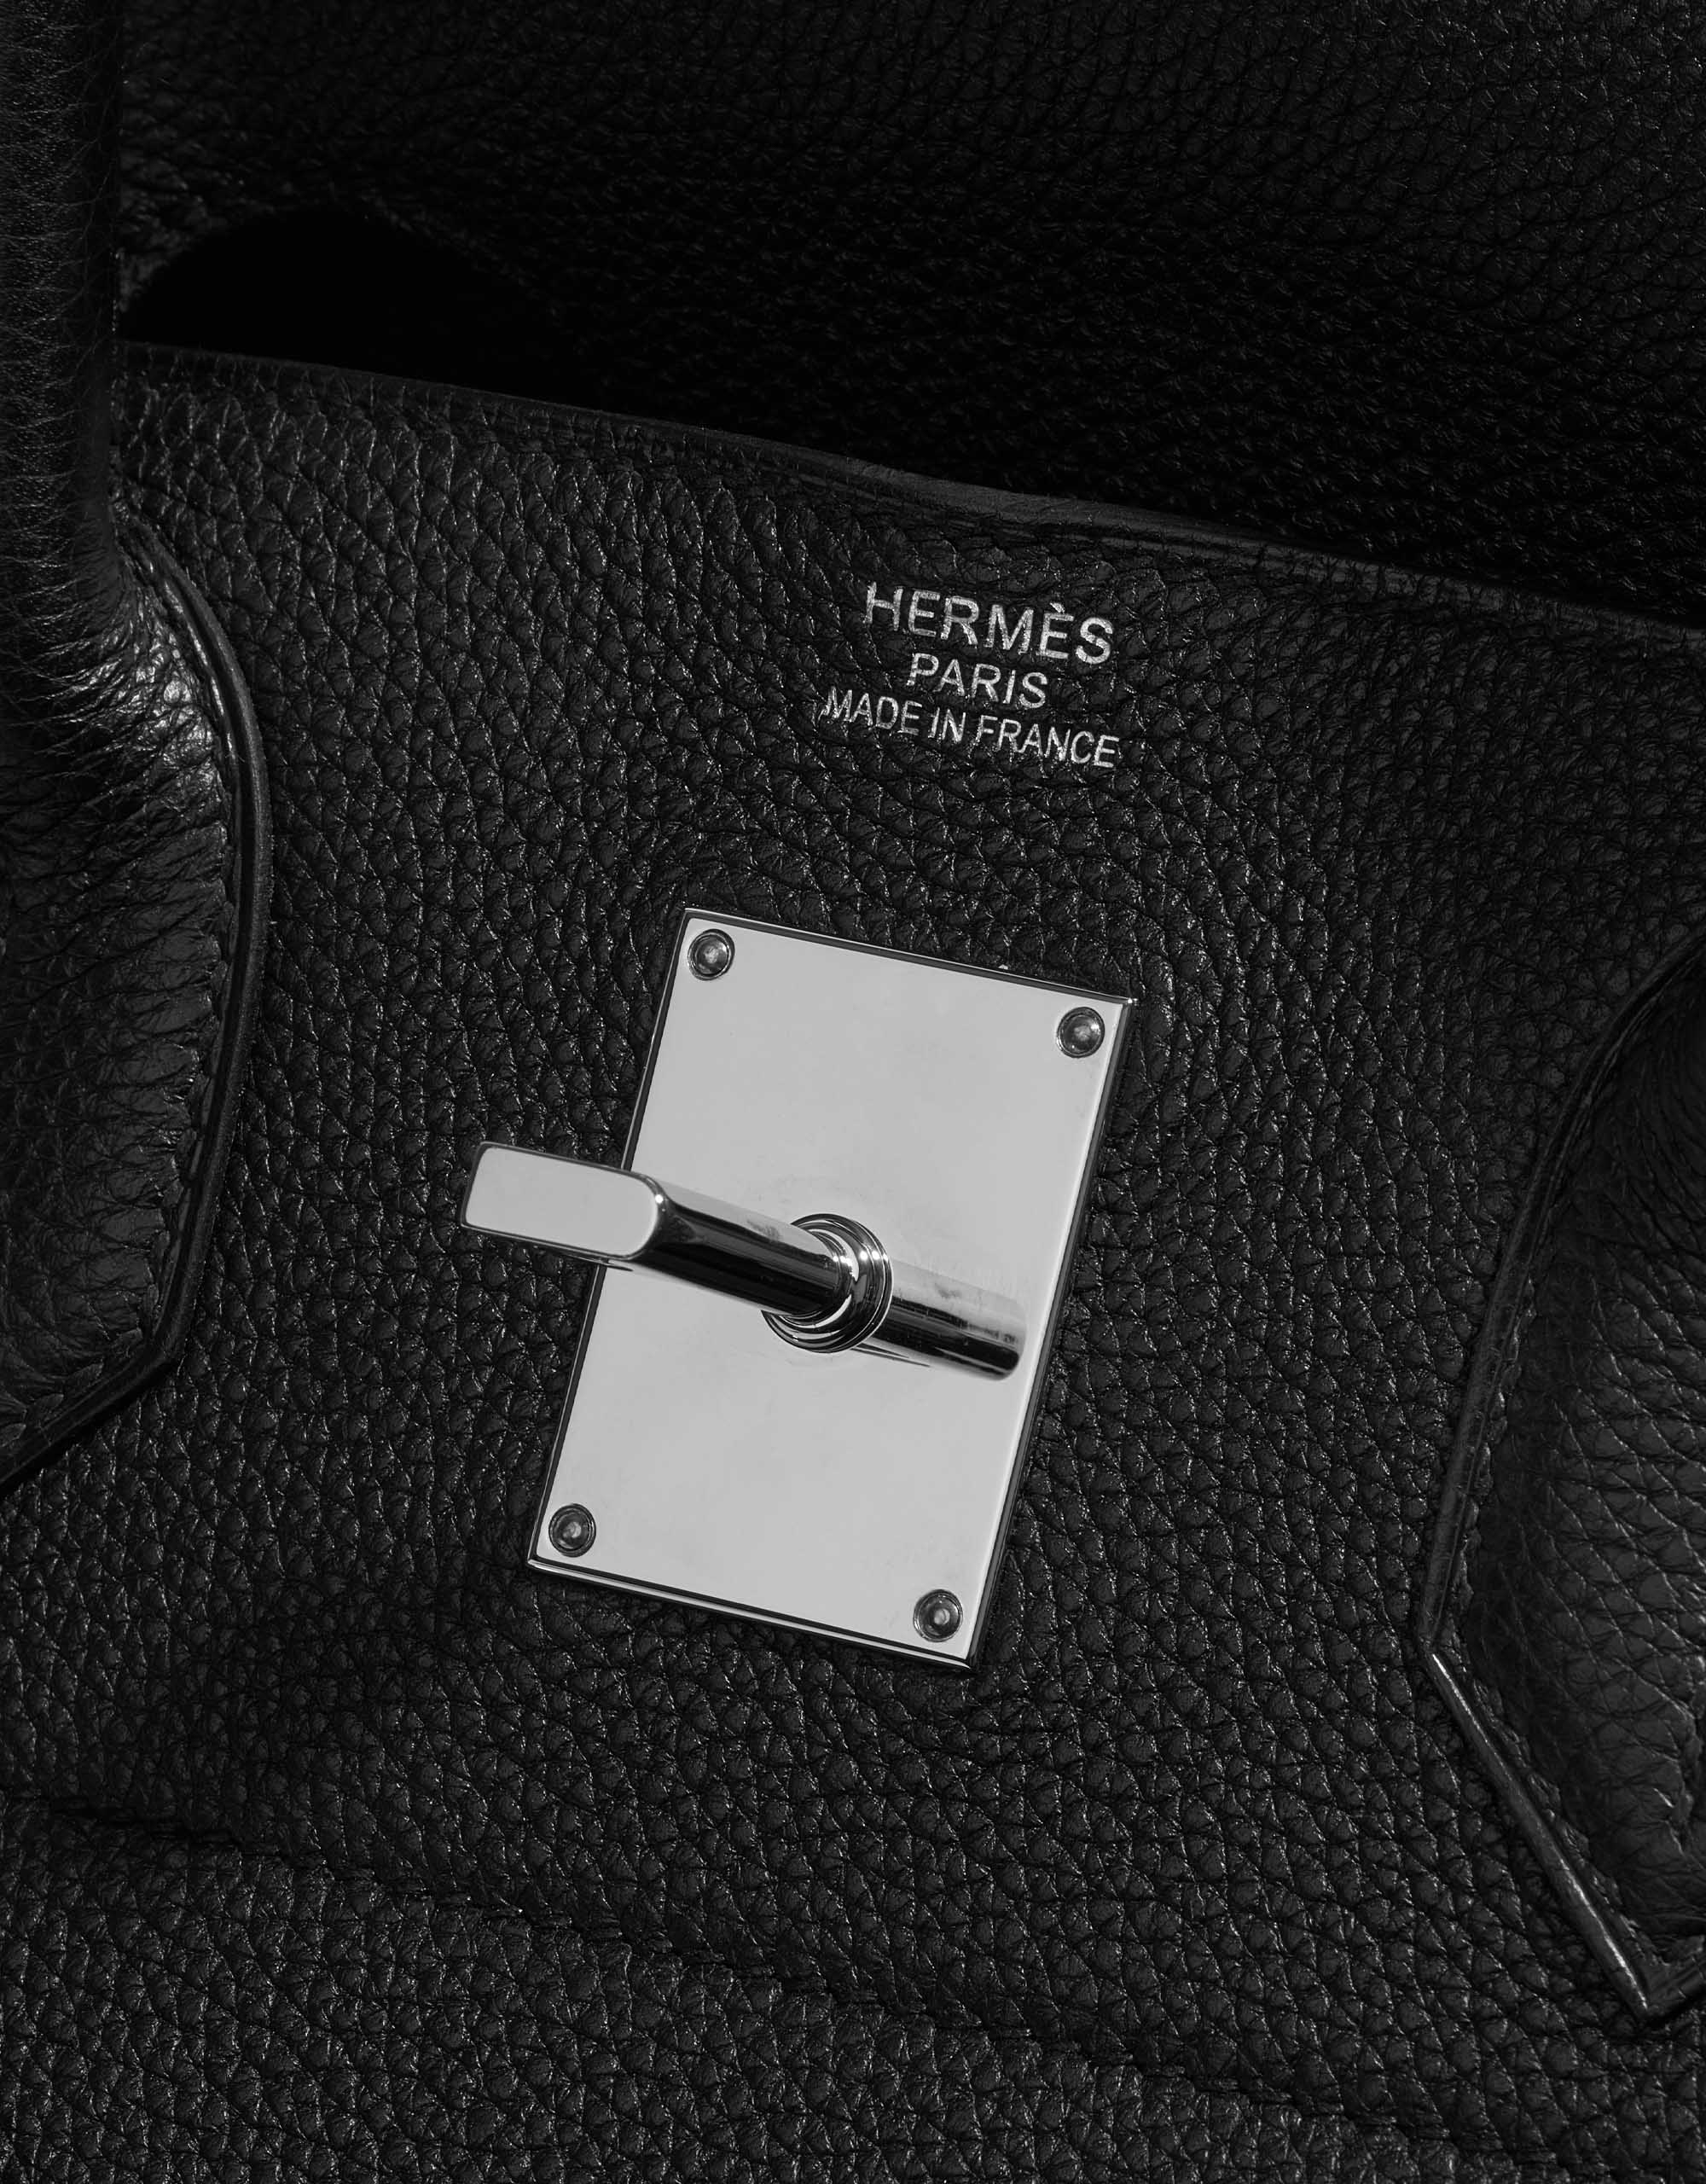 Hermès 2021 Pre-owned Haut à Courroies Travel Bag - Neutrals